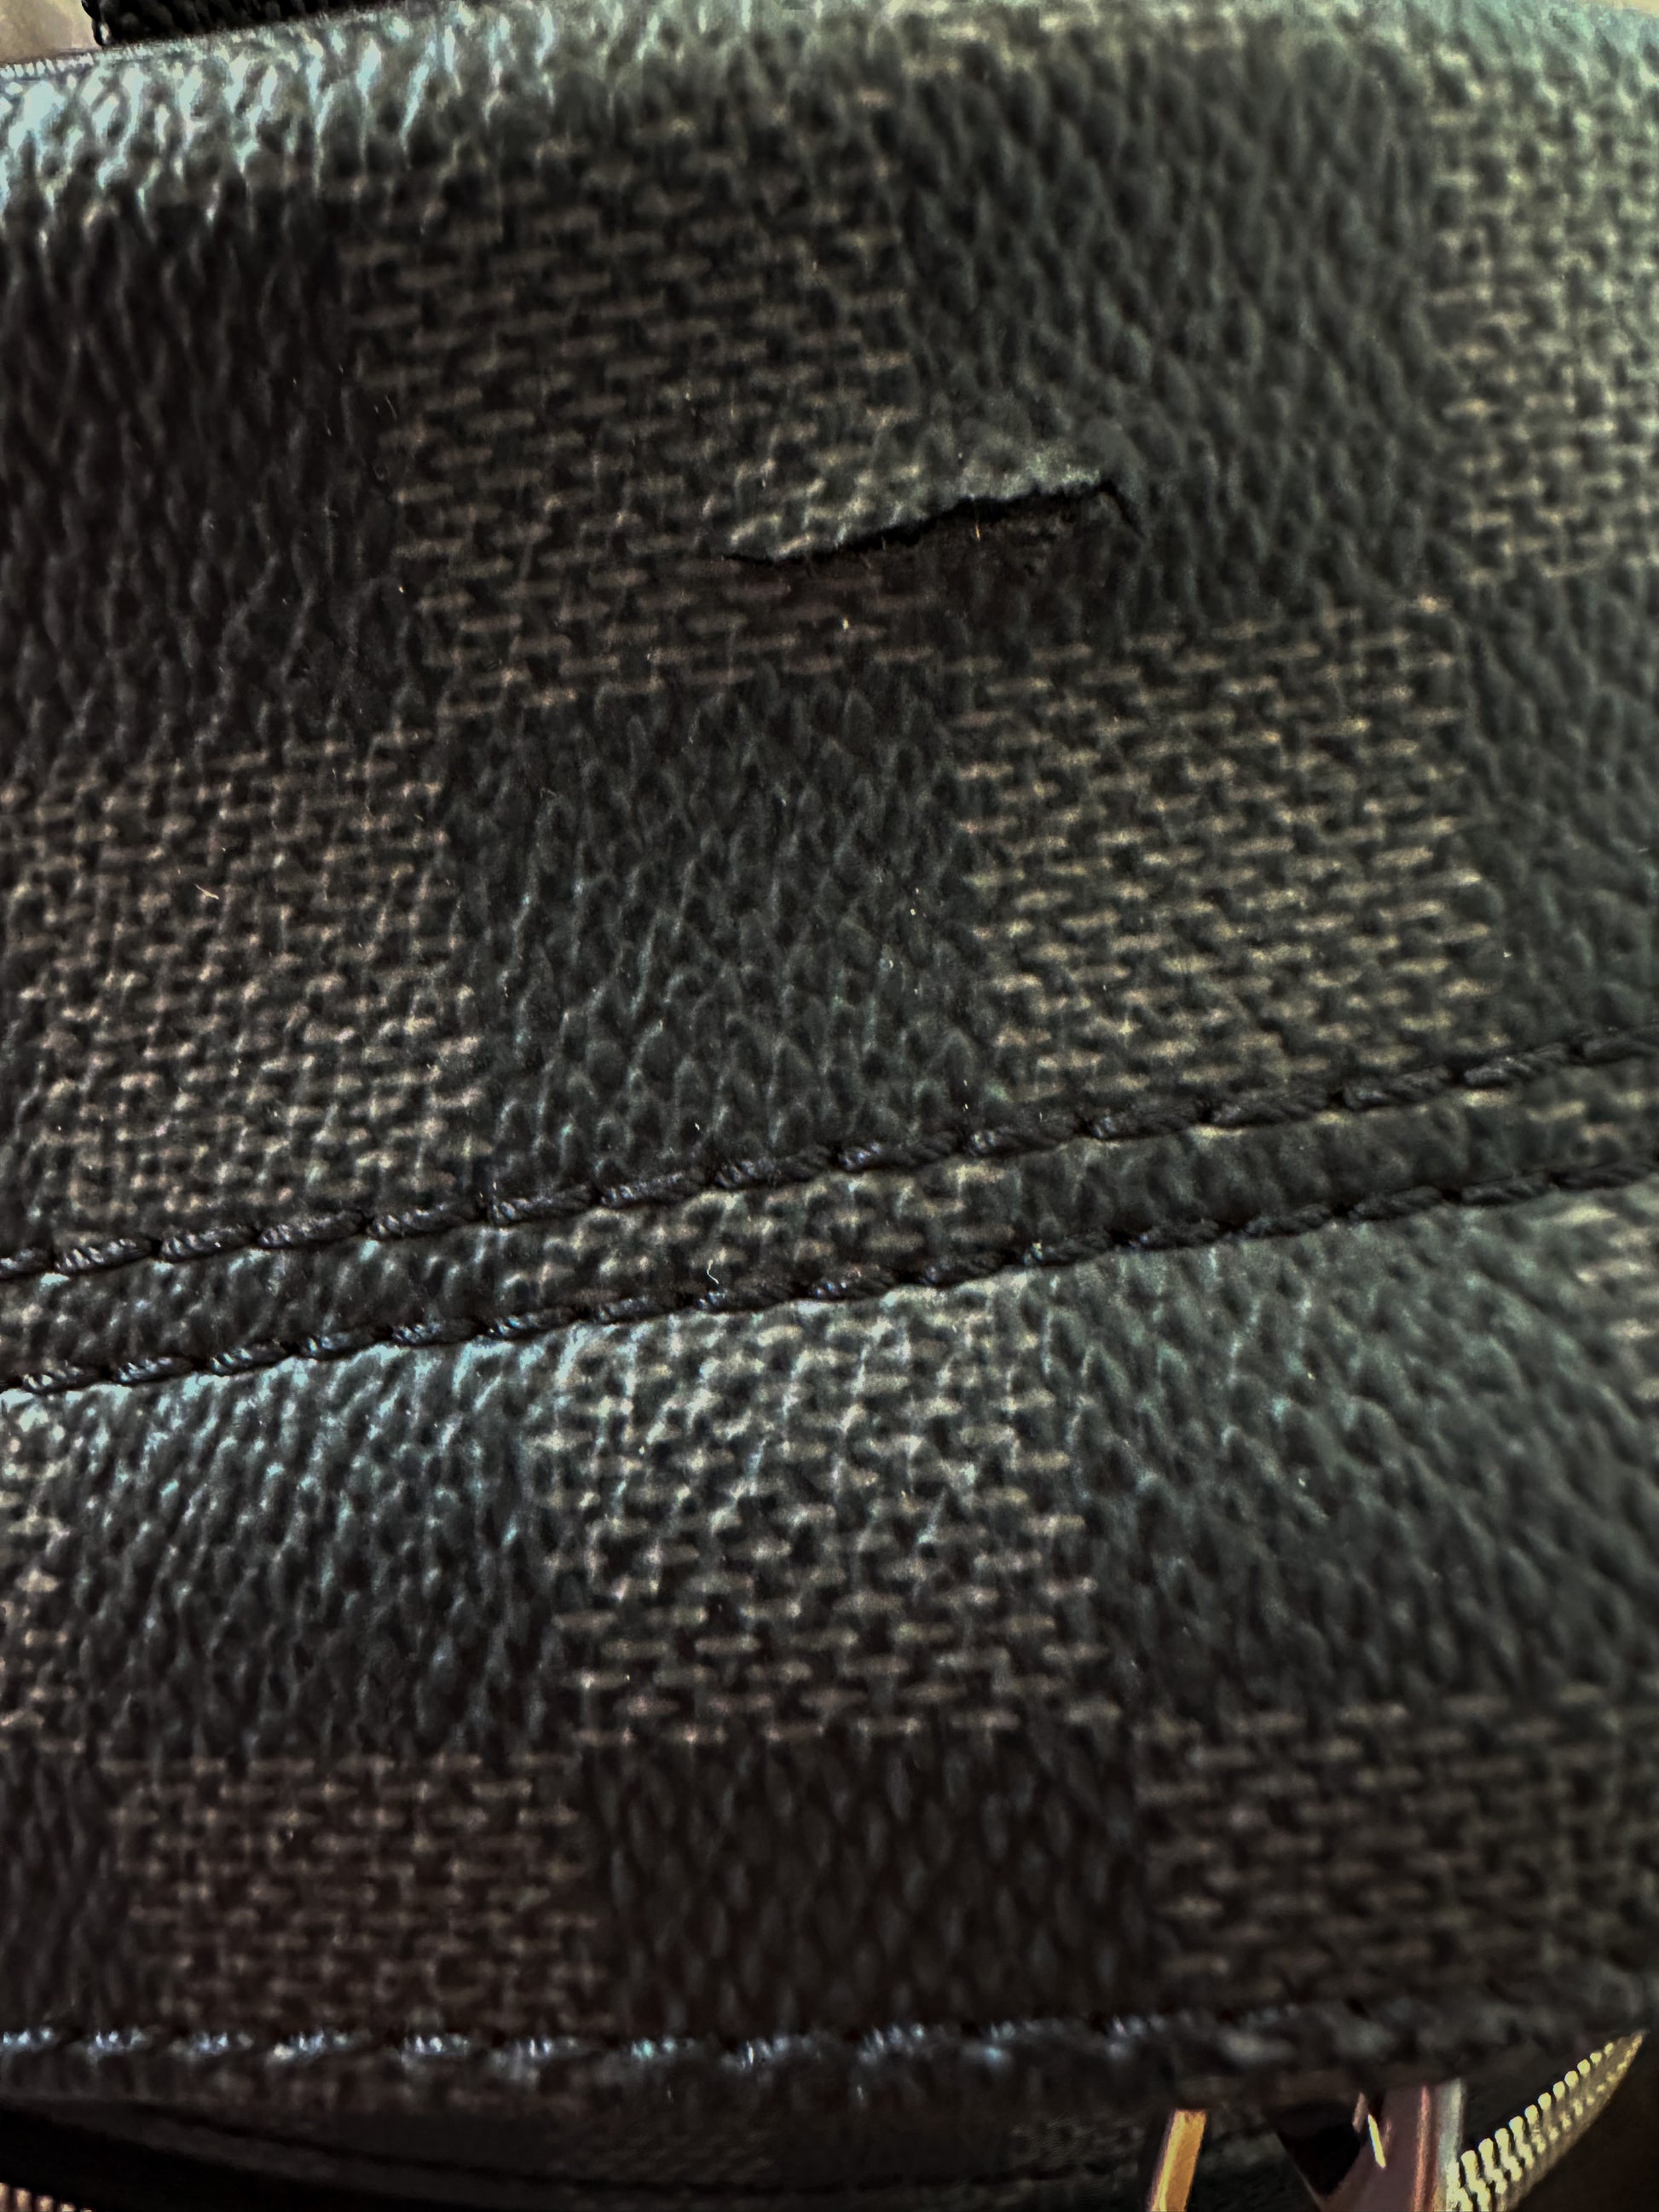 Louis Vuitton Michael Damier Graphite Canvas Backpack Bag Black